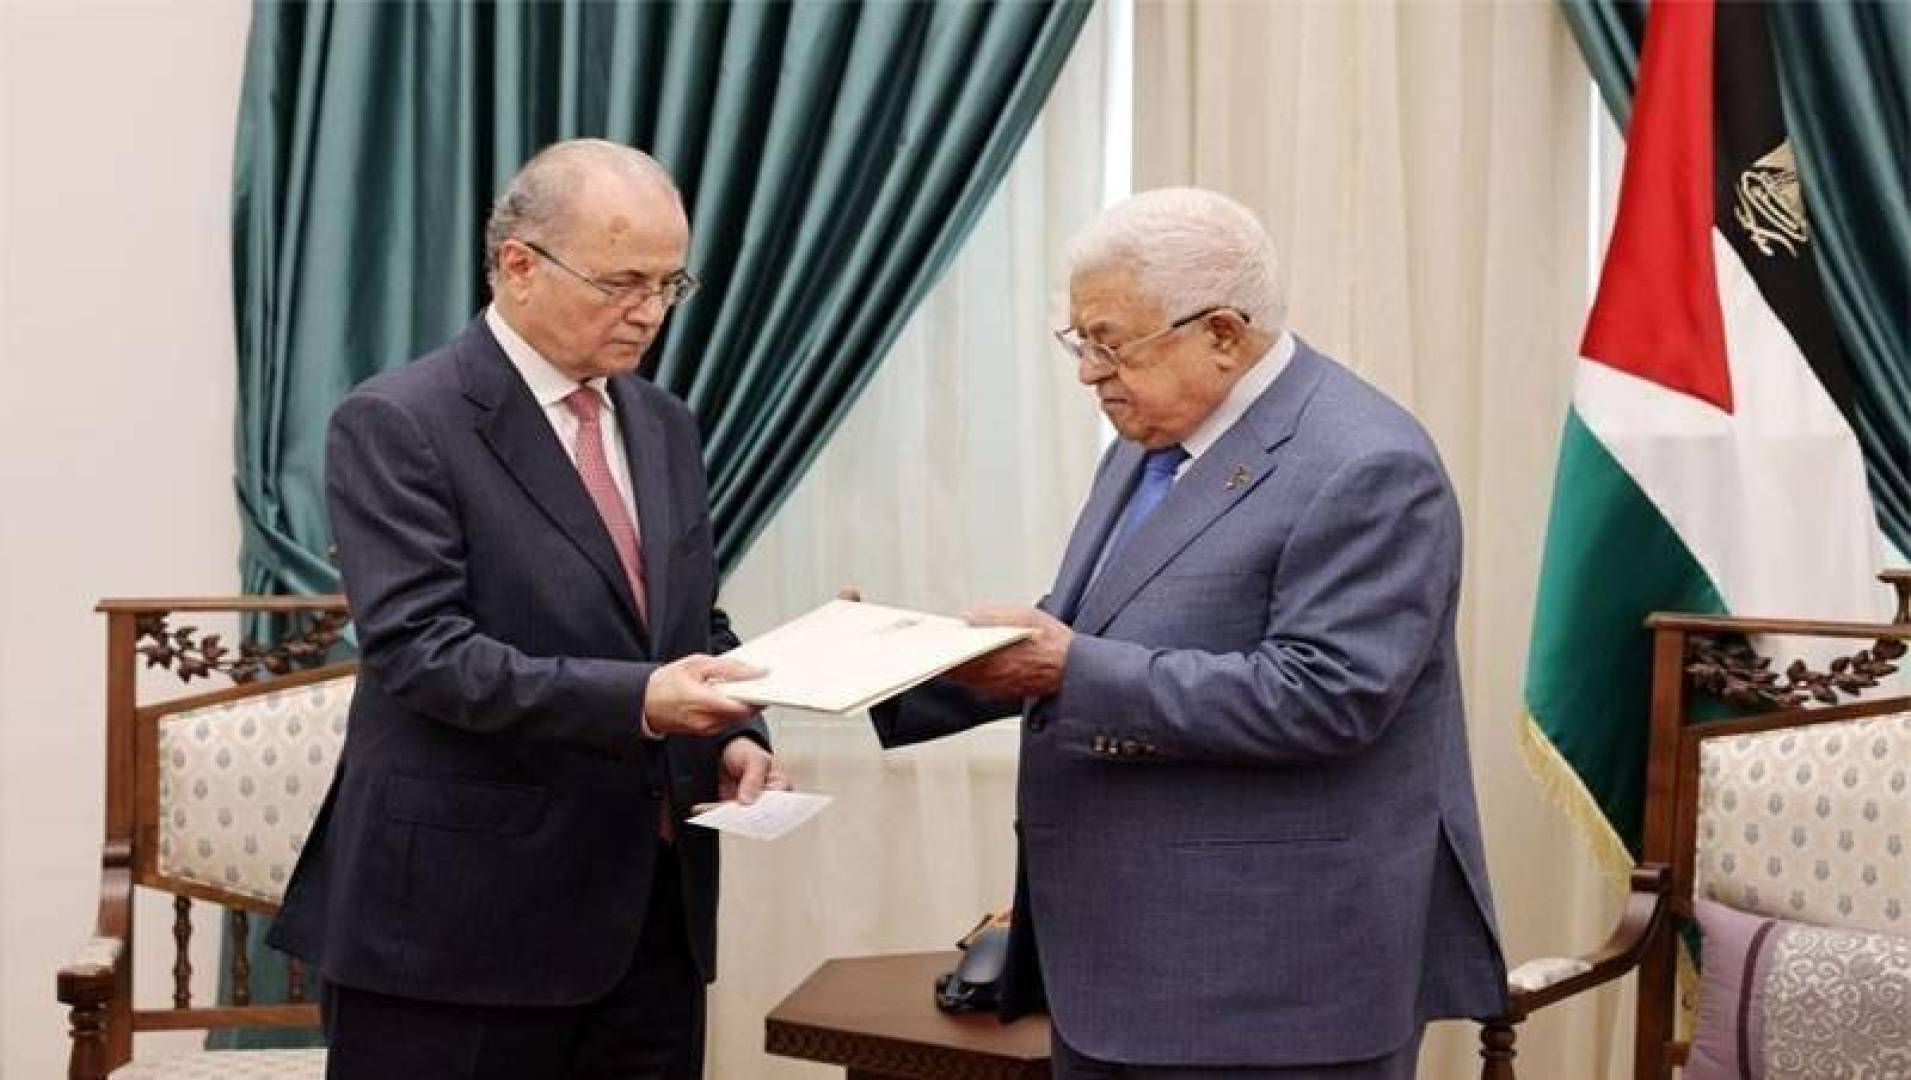 مرسوم رئاسي بتشكيل الحكومة الفلسطينية الجديدة رقم 19